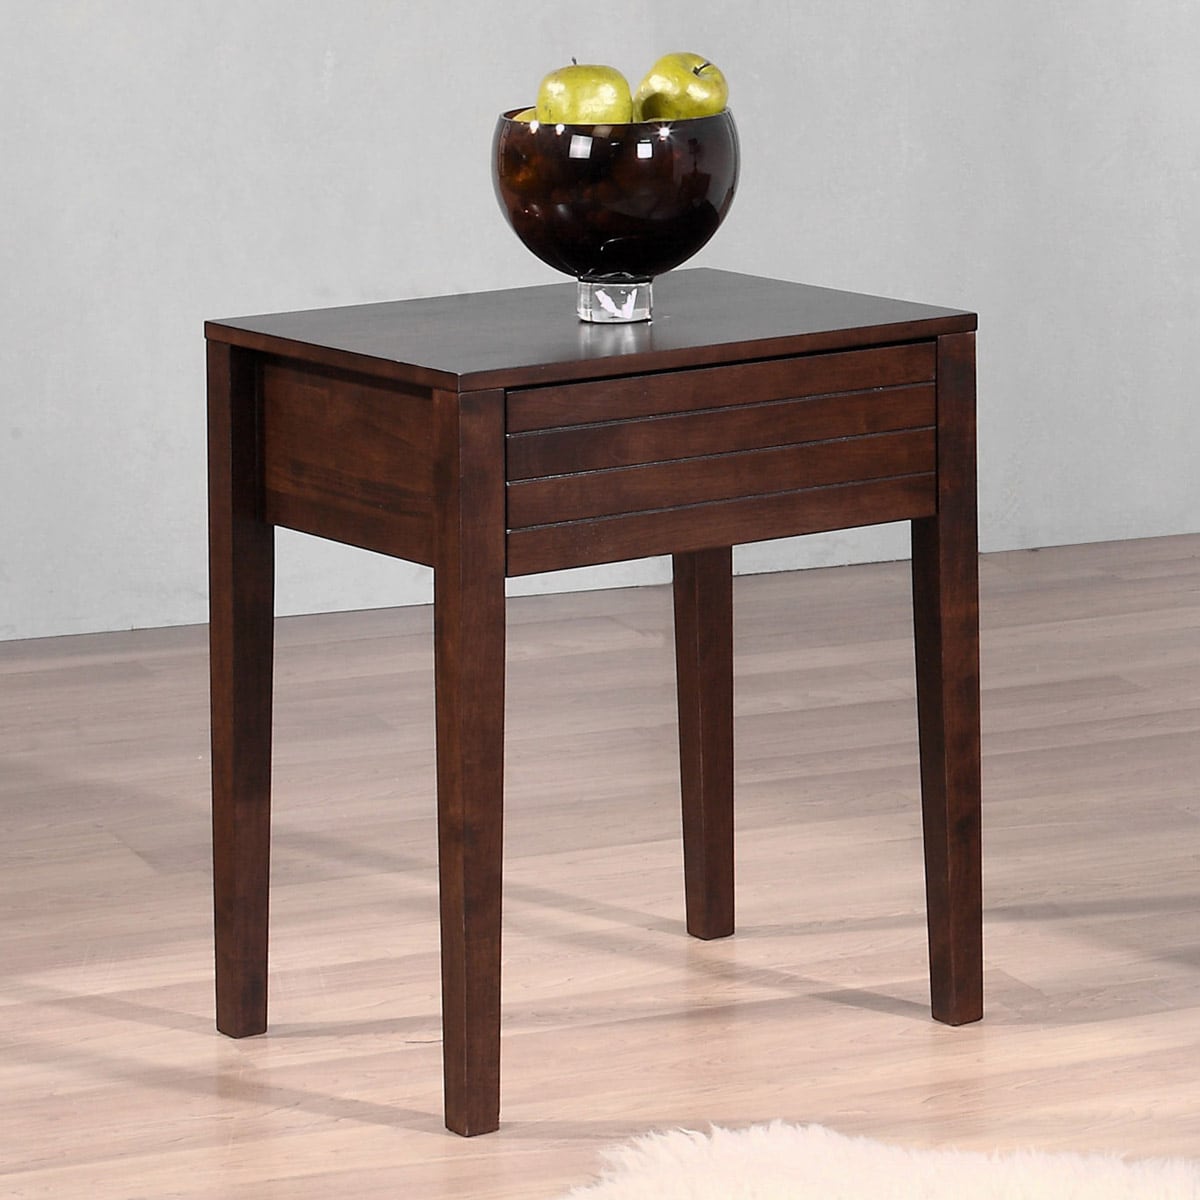 Wood Nightstands Buy Bedroom Furniture Online